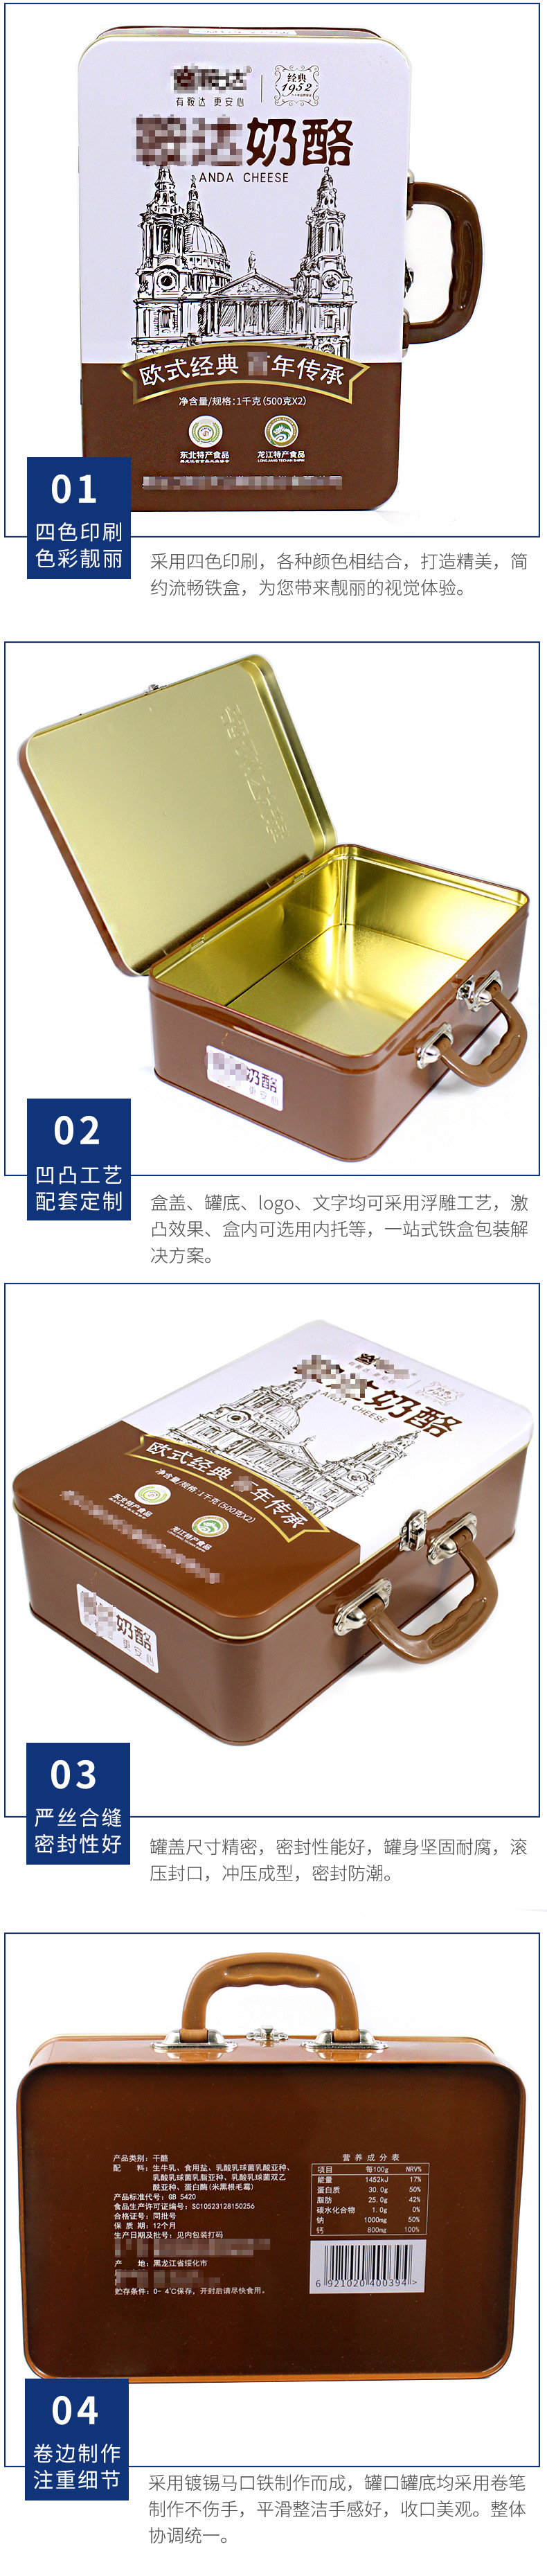 奶酪铁盒包装定制 大手挽午餐铁盒子 厂家直销翻盖马口铁奶酪铁罐示例图14